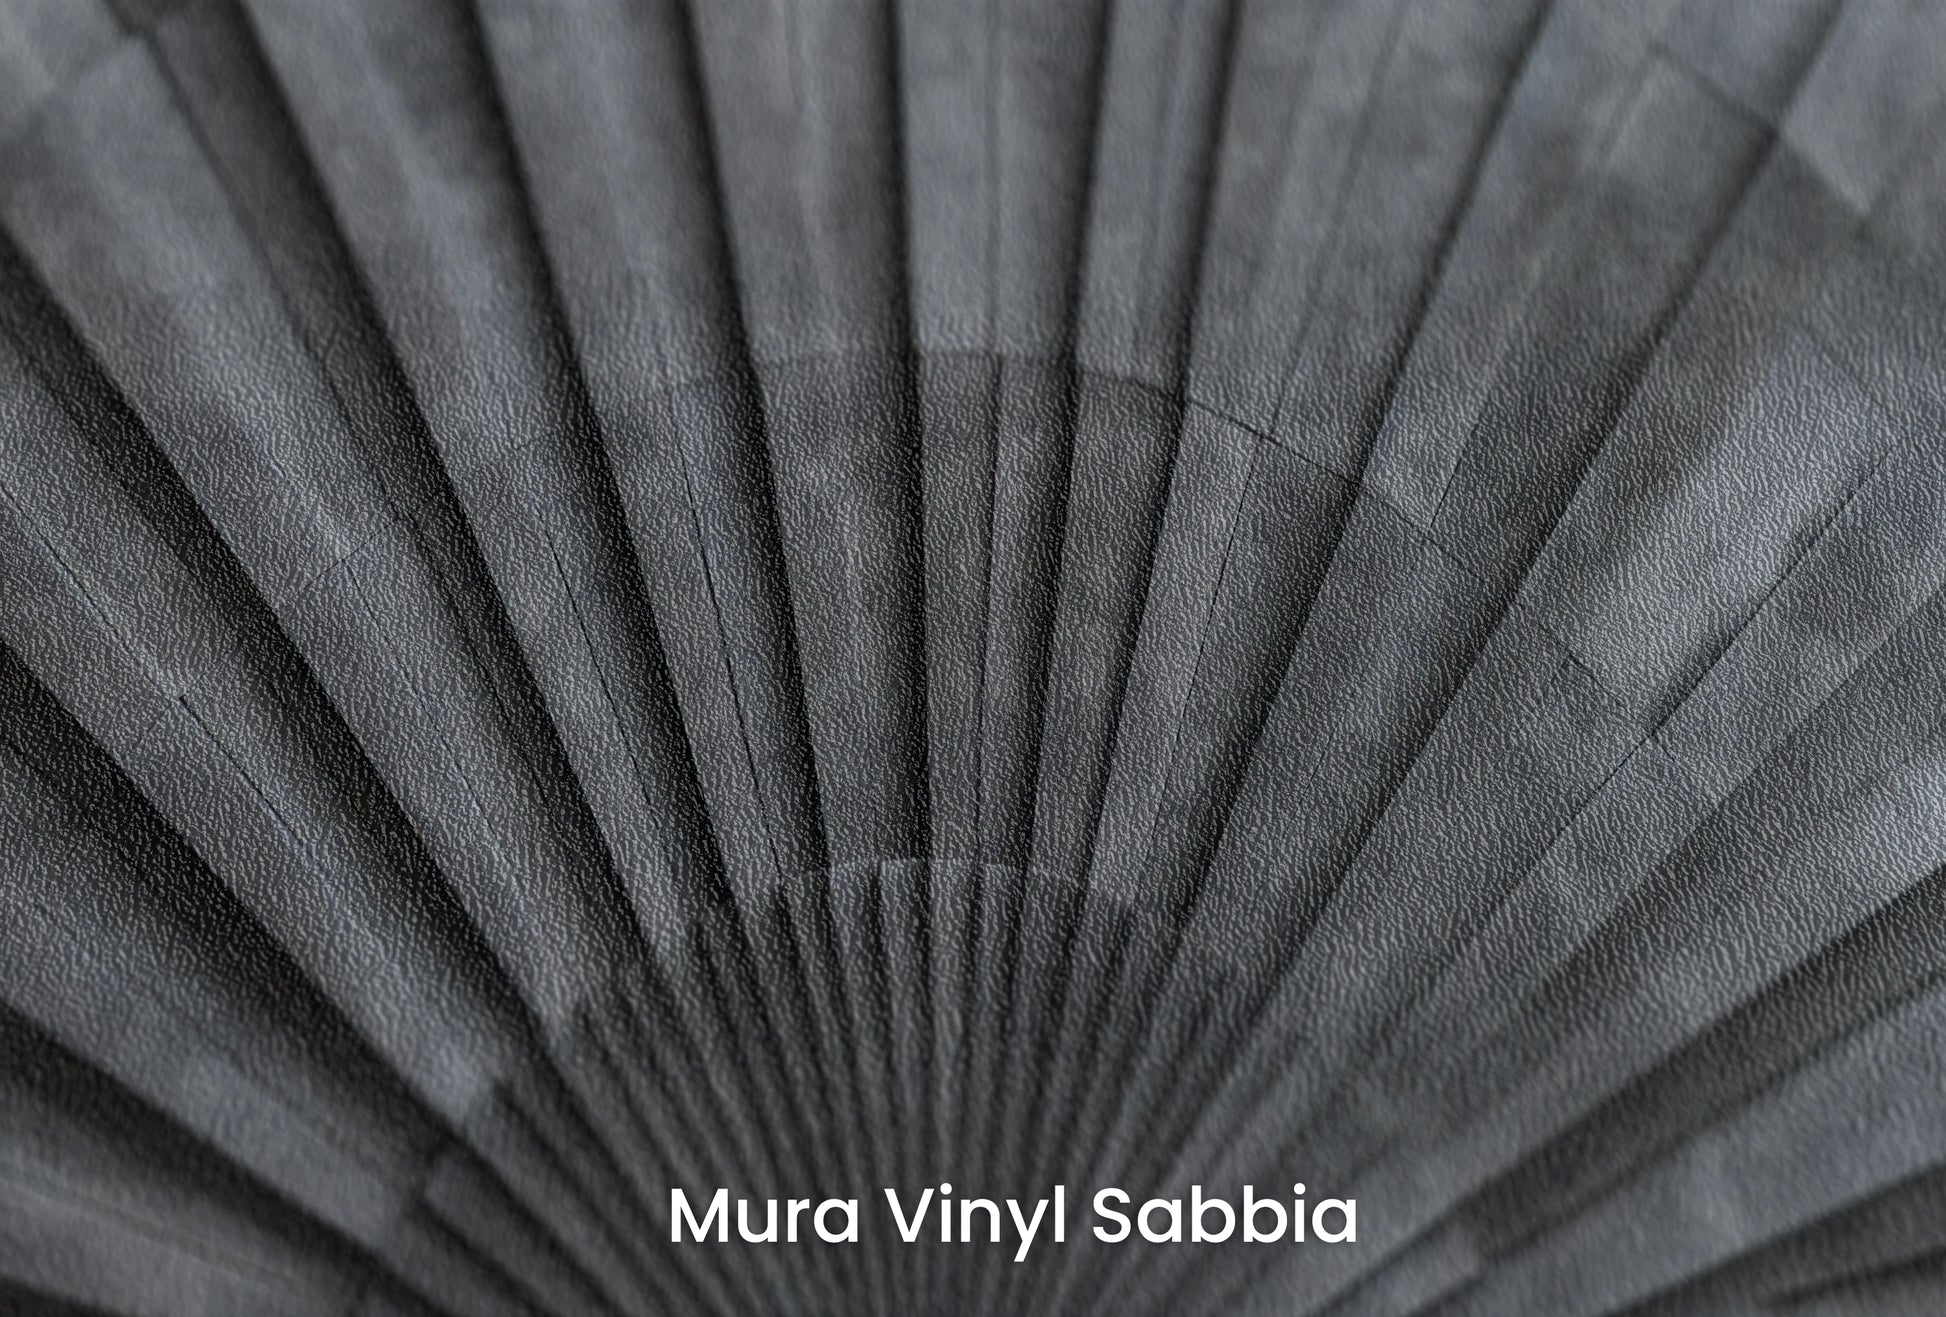 Zbliżenie na artystyczną fototapetę o nazwie Radial Burst na podłożu Mura Vinyl Sabbia struktura grubego ziarna piasku.